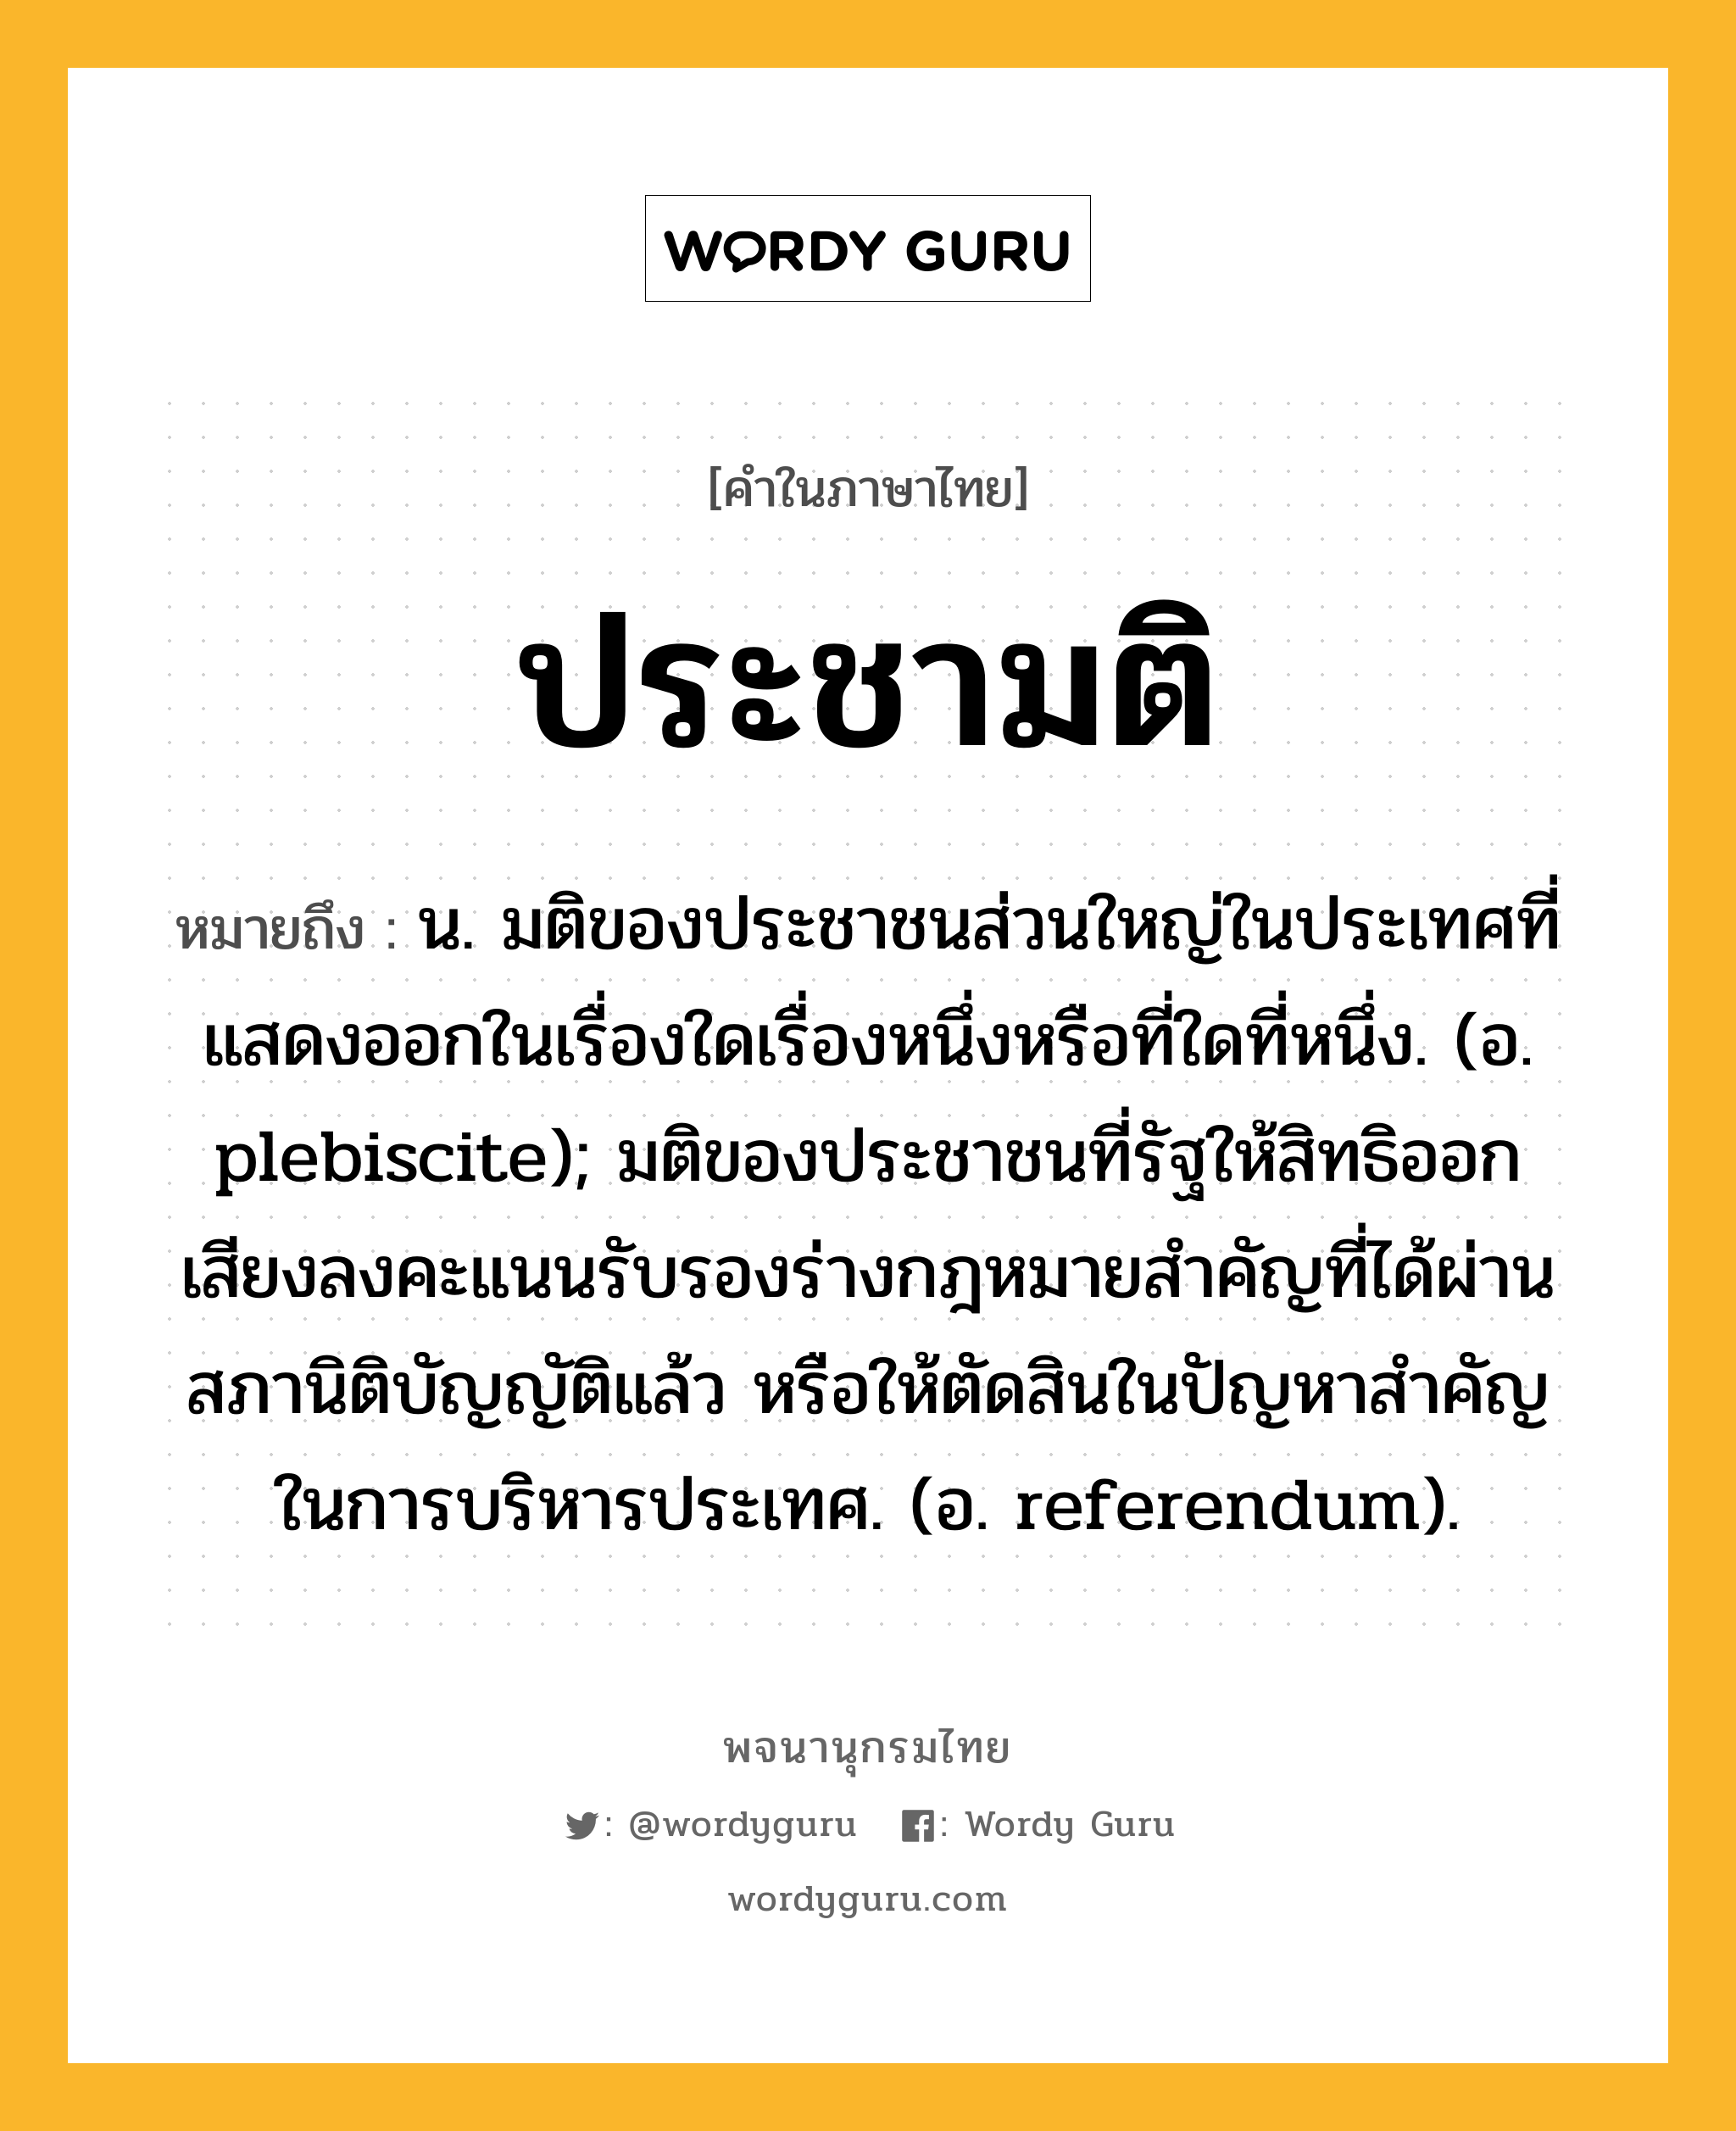 ประชามติ หมายถึงอะไร?, คำในภาษาไทย ประชามติ หมายถึง น. มติของประชาชนส่วนใหญ่ในประเทศที่แสดงออกในเรื่องใดเรื่องหนึ่งหรือที่ใดที่หนึ่ง. (อ. plebiscite); มติของประชาชนที่รัฐให้สิทธิออกเสียงลงคะแนนรับรองร่างกฎหมายสําคัญที่ได้ผ่านสภานิติบัญญัติแล้ว หรือให้ตัดสินในปัญหาสําคัญในการบริหารประเทศ. (อ. referendum).